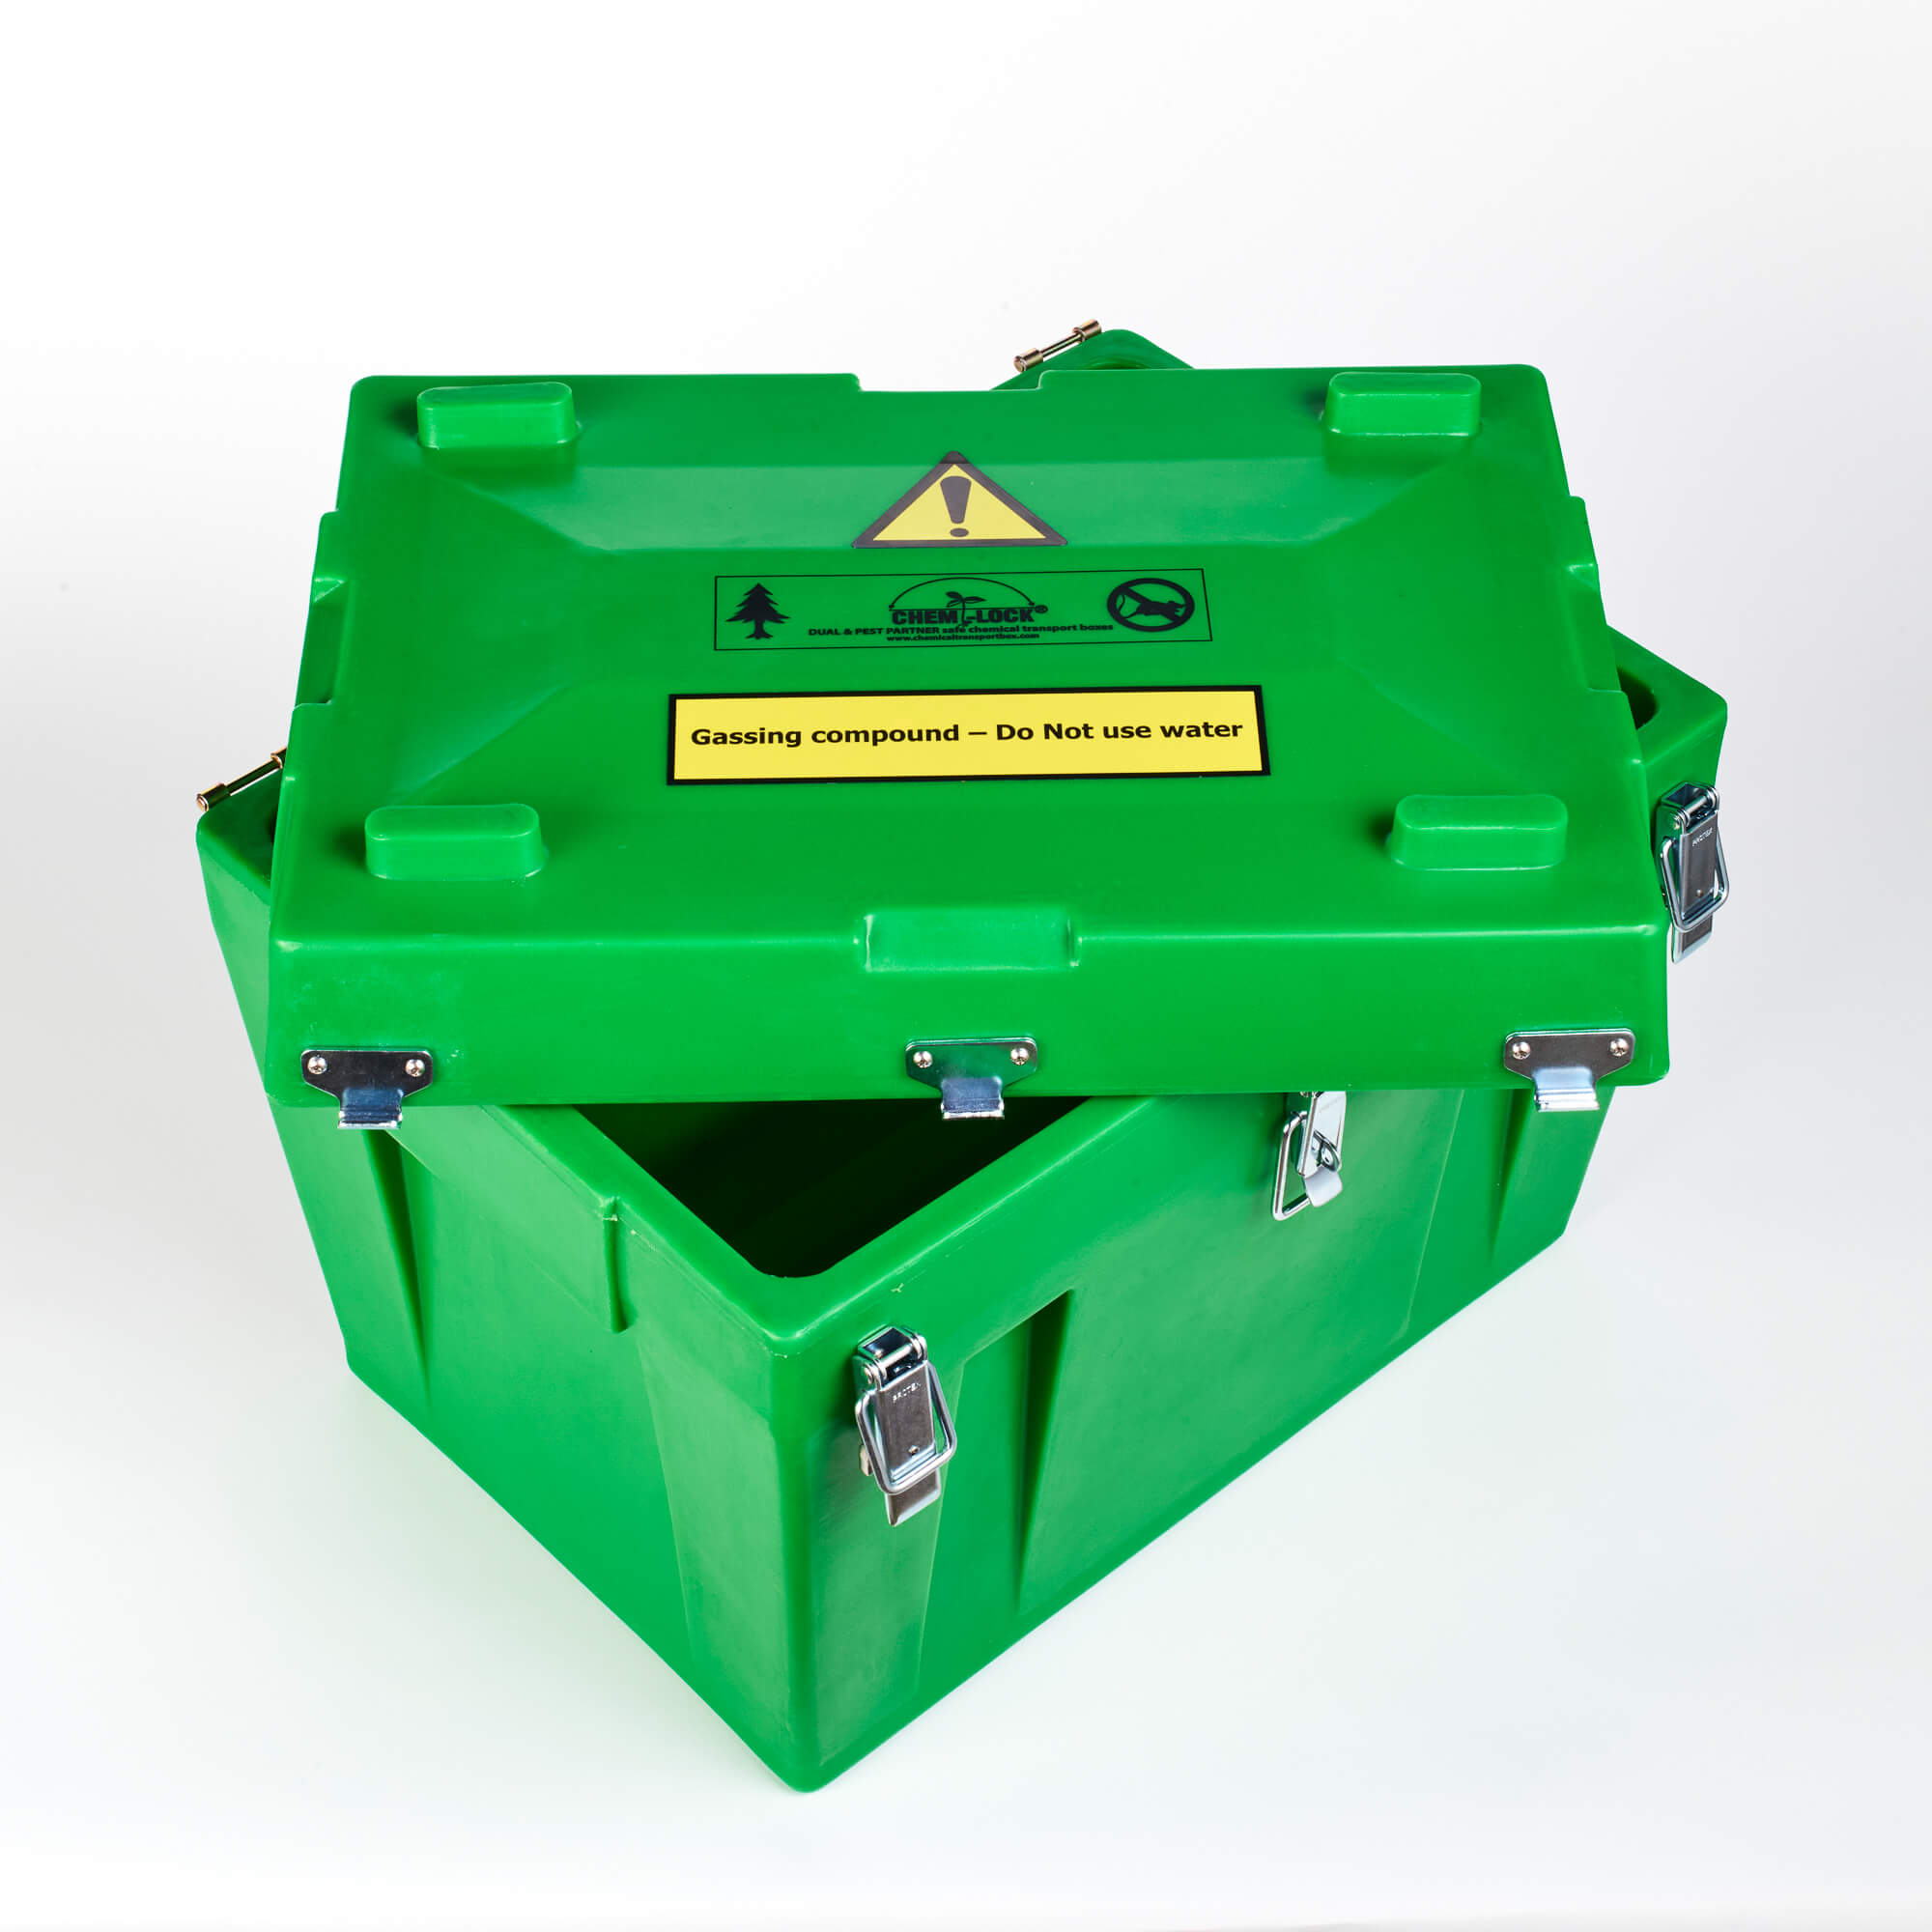 Chem-Lock® Dual Chemical Transport Box